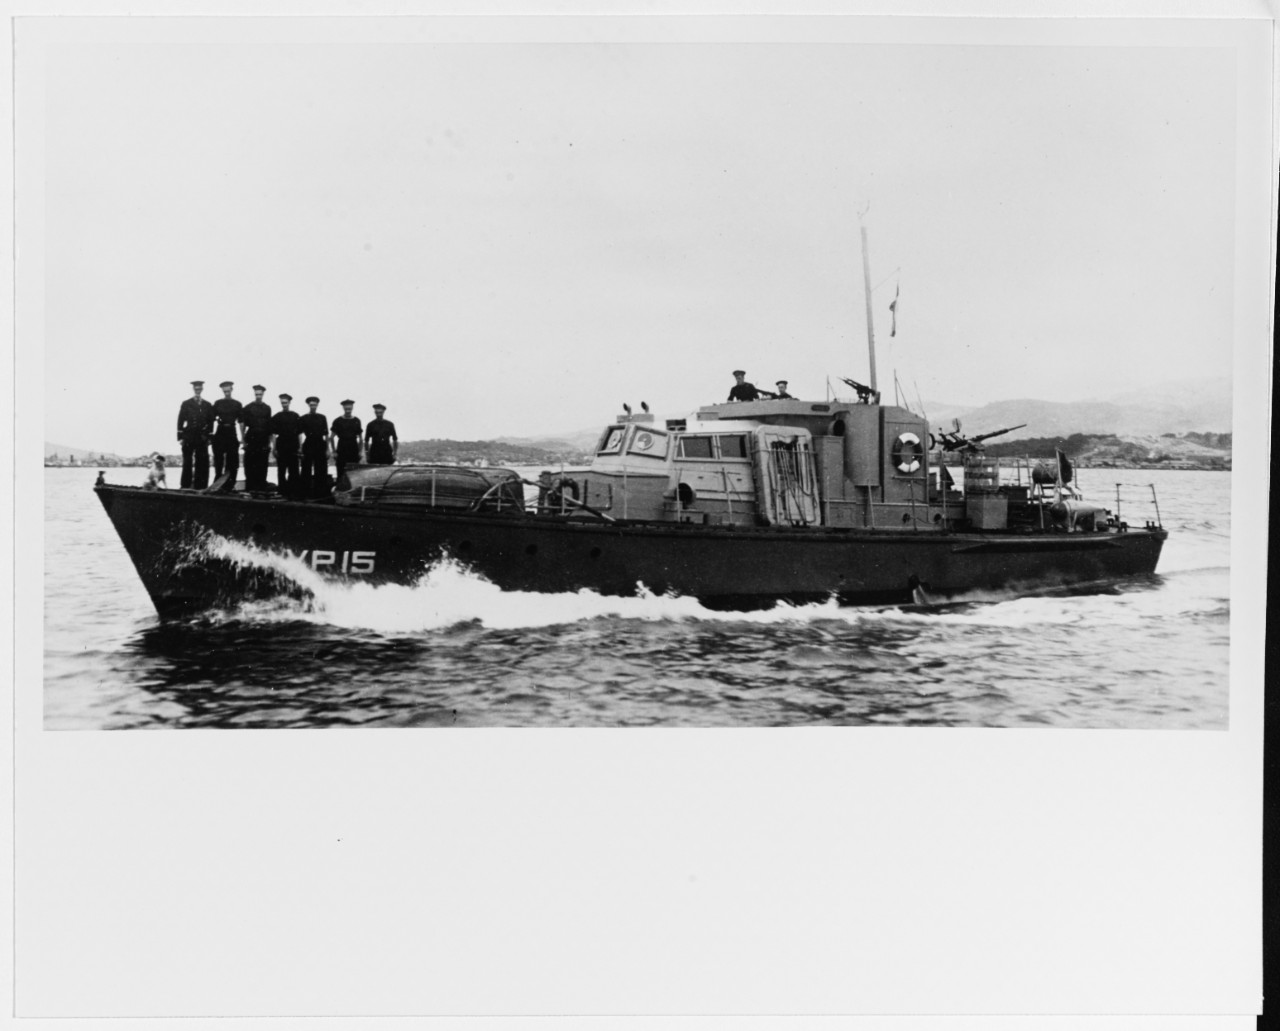 VP 15 (French Patrol Vessel)